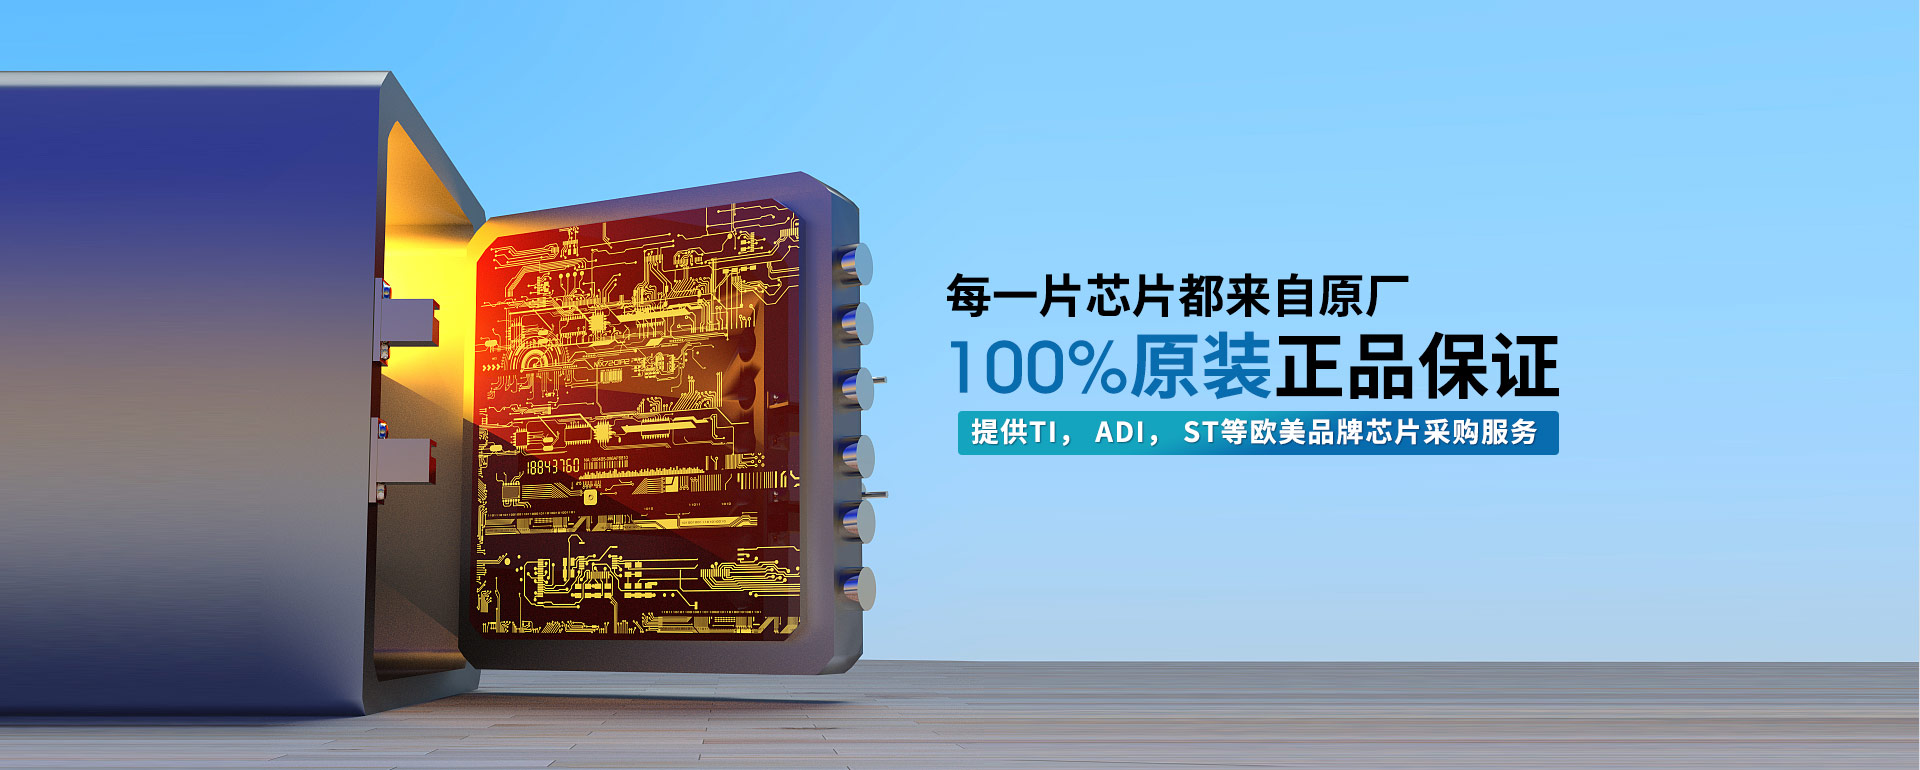 汇超电子-每一片芯片都来自原厂,100%原装正品保证